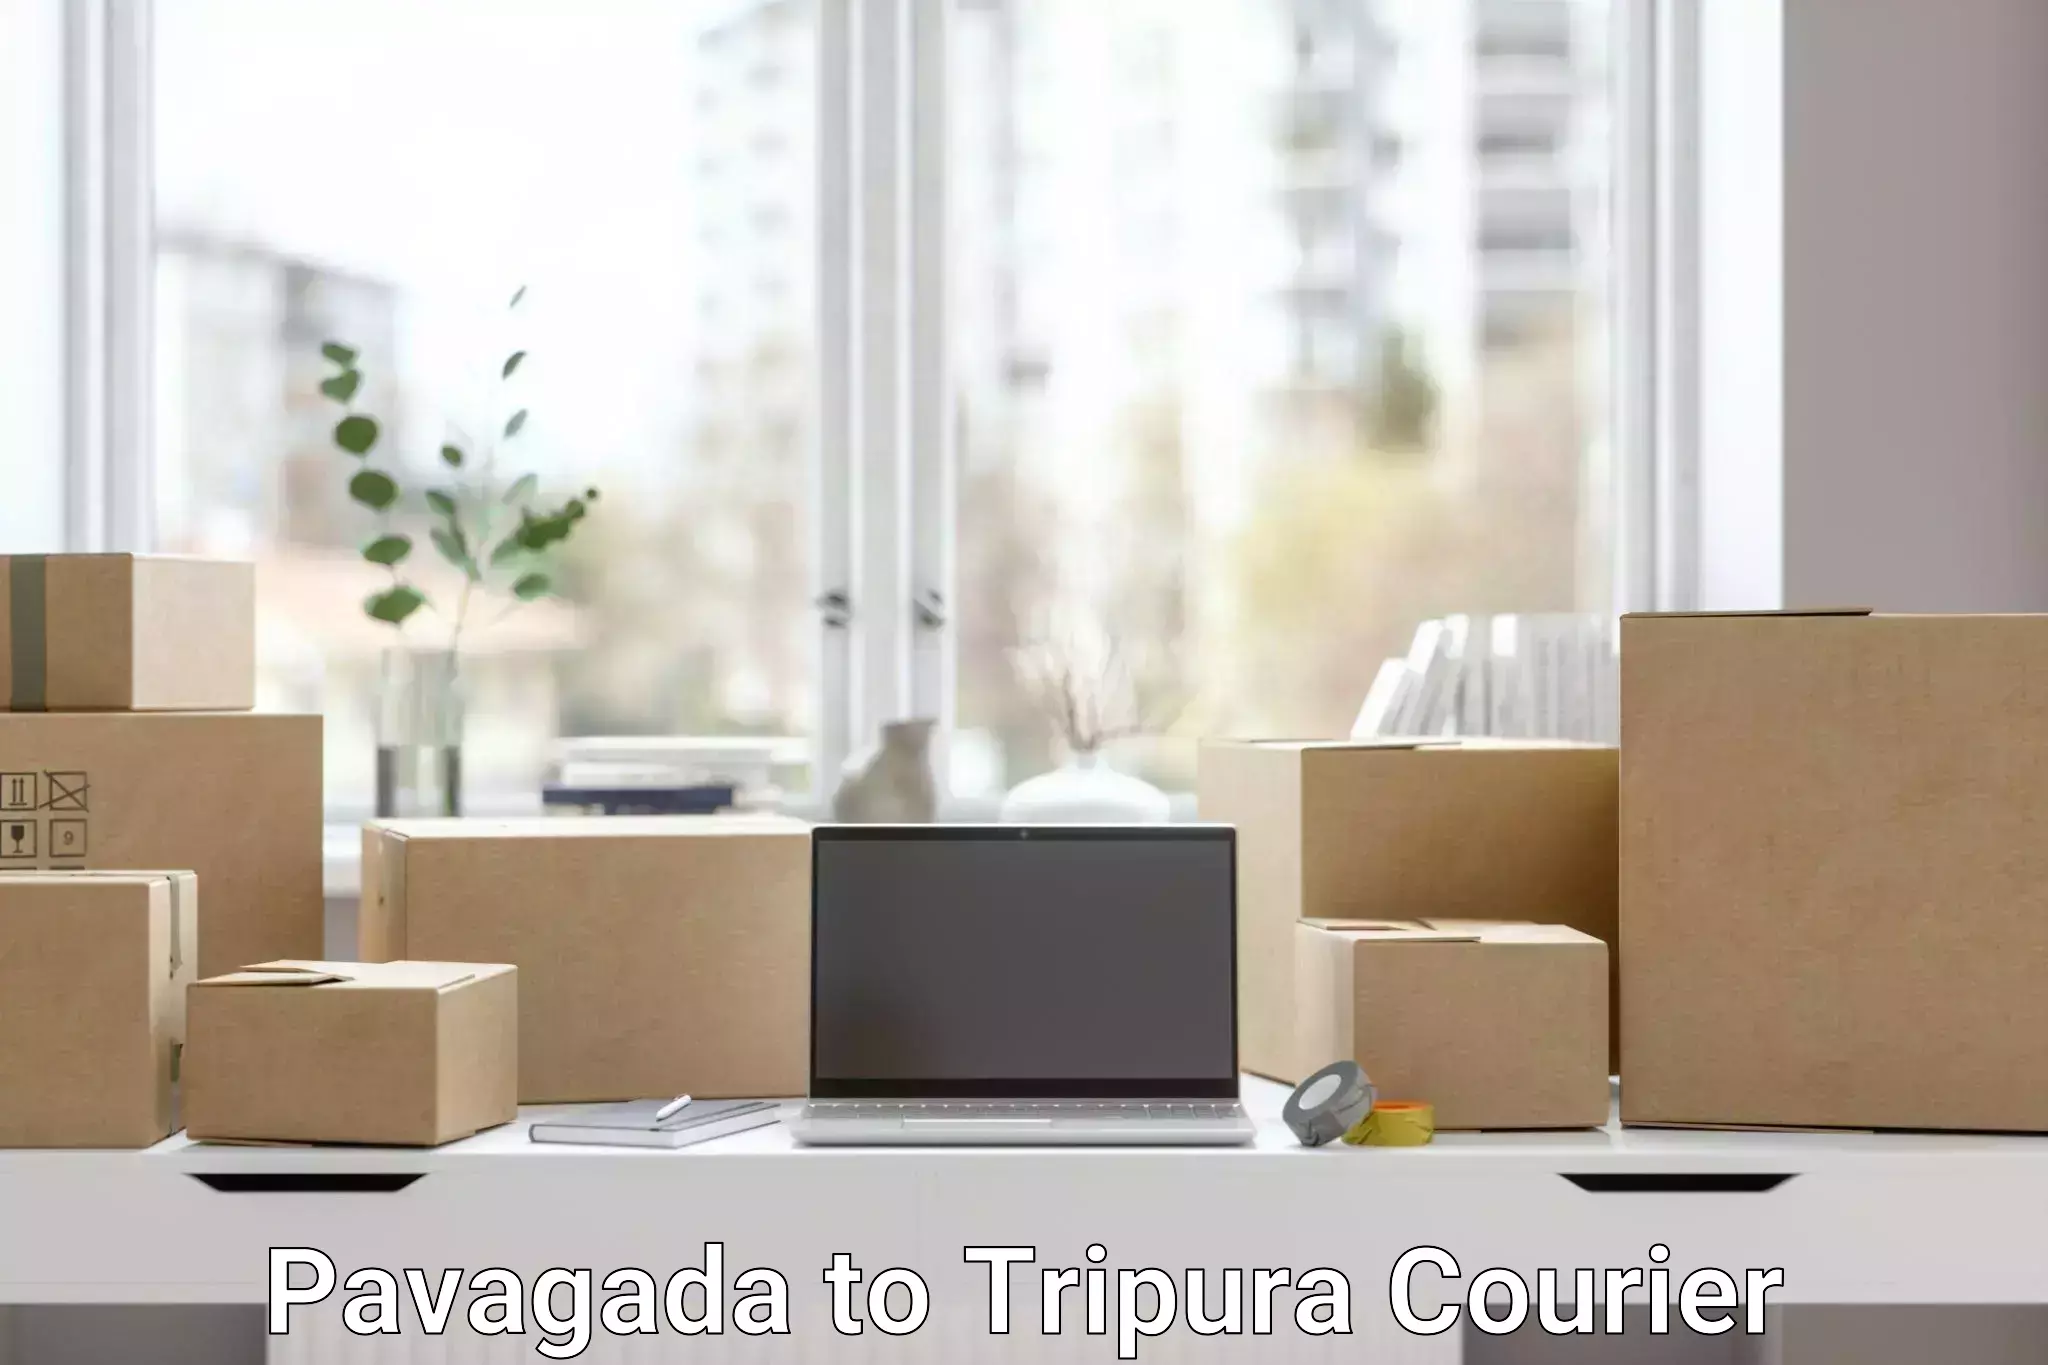 Heavy parcel delivery Pavagada to IIIT Agartala